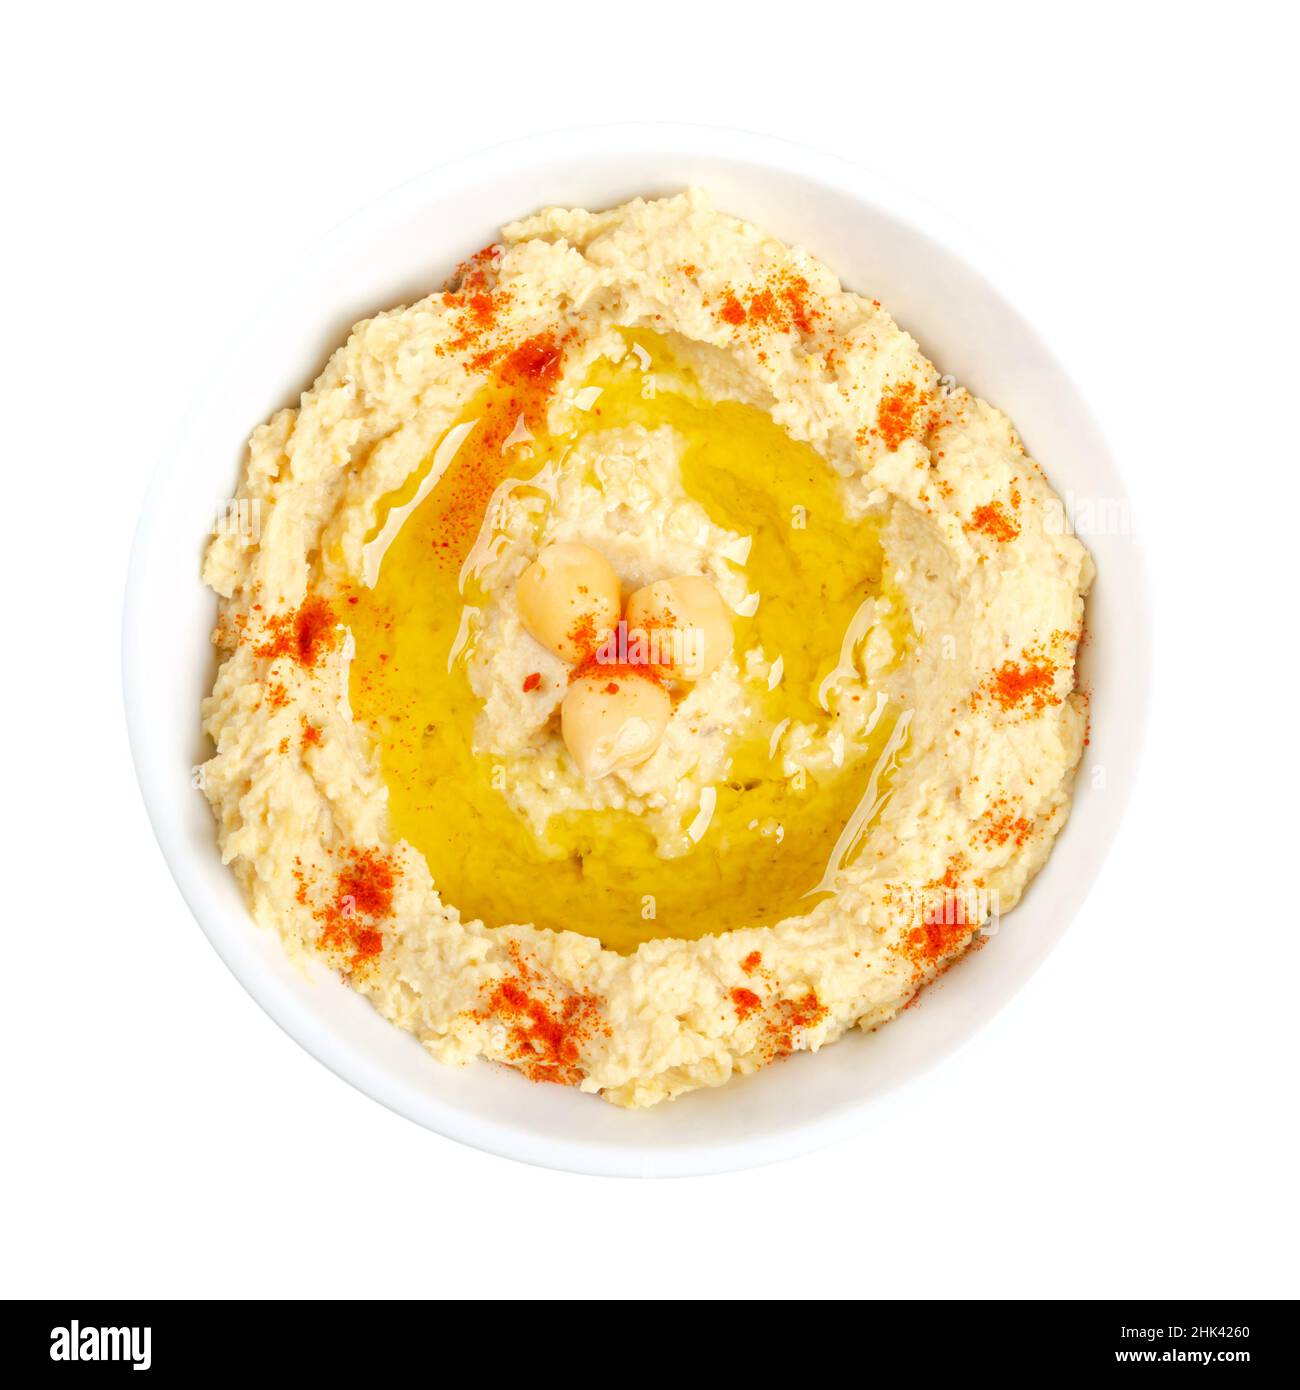 Hummus Dip mit Paprikapulver und Olivenöl, in einer weißen Schüssel. Nahost-Dip, Aufstrich oder herzhaftes Gericht aus gekochten, pürierten Kichererbsen. Stockfoto